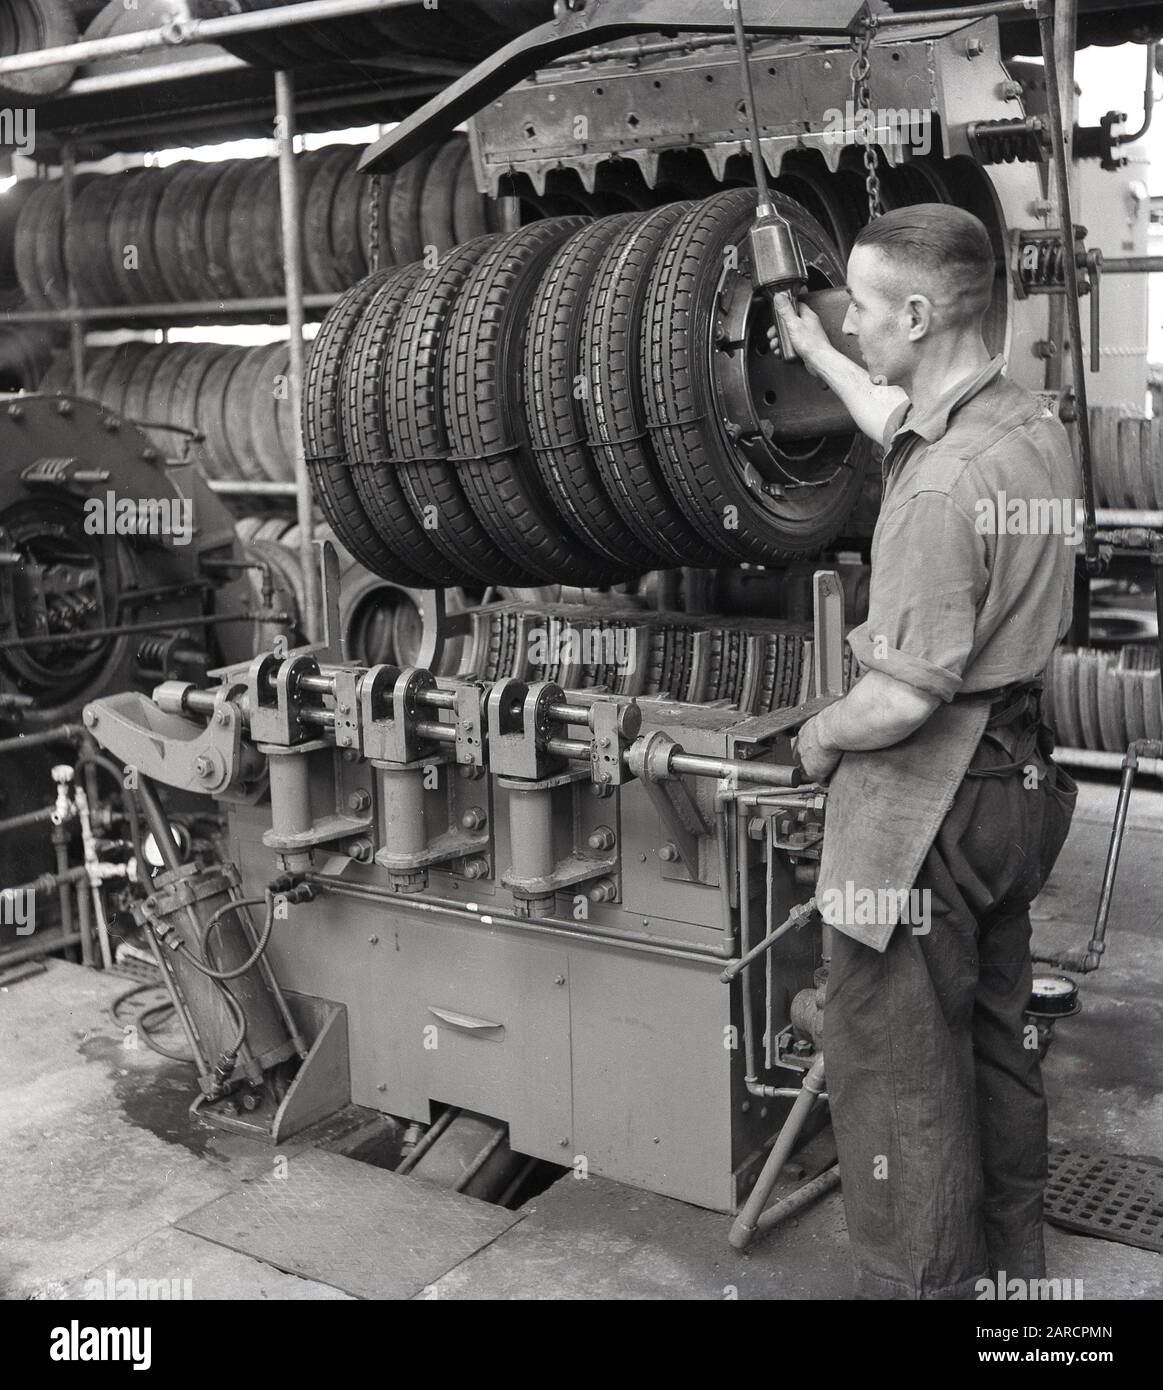 In den 1950er Jahren, historisch, ein Fabrikarbeiter einer neuen Maschine zur Reifenherstellung, eine Aushärtepresse, die den "neuen" Reifen gegen das Laufprofil und die Seitentexte innerhalb der Formen drückte und dem Reifen sein endgültiges Aussehen gab, England, Großbritannien. Stockfoto